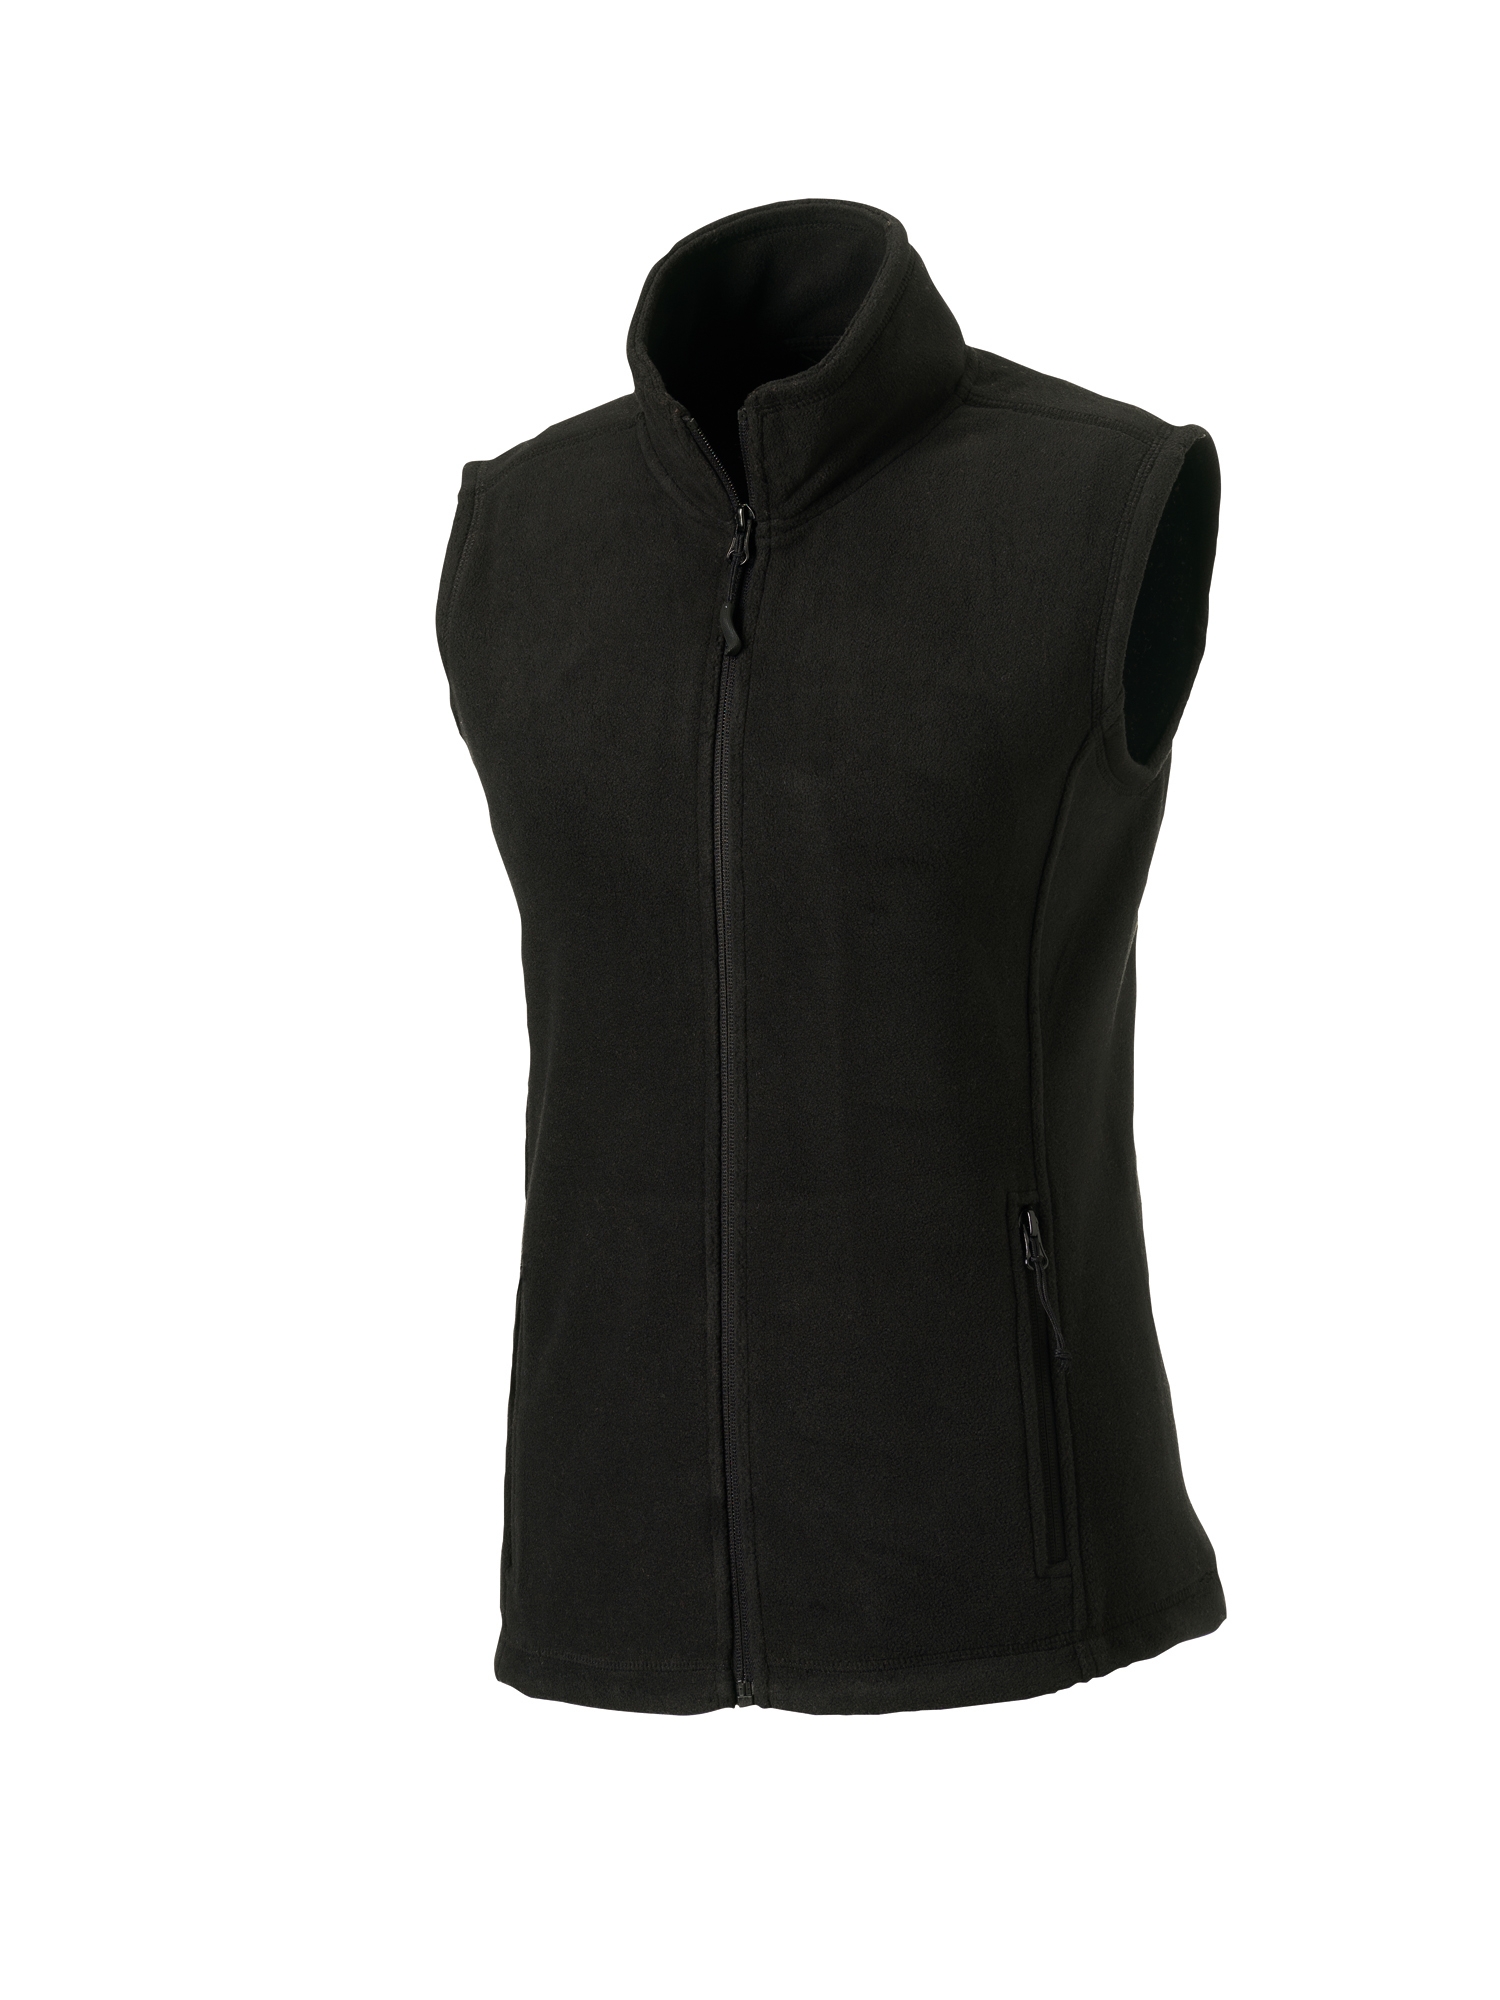 Russell Ladies Outdoor Fleece Gilet – Black Size S